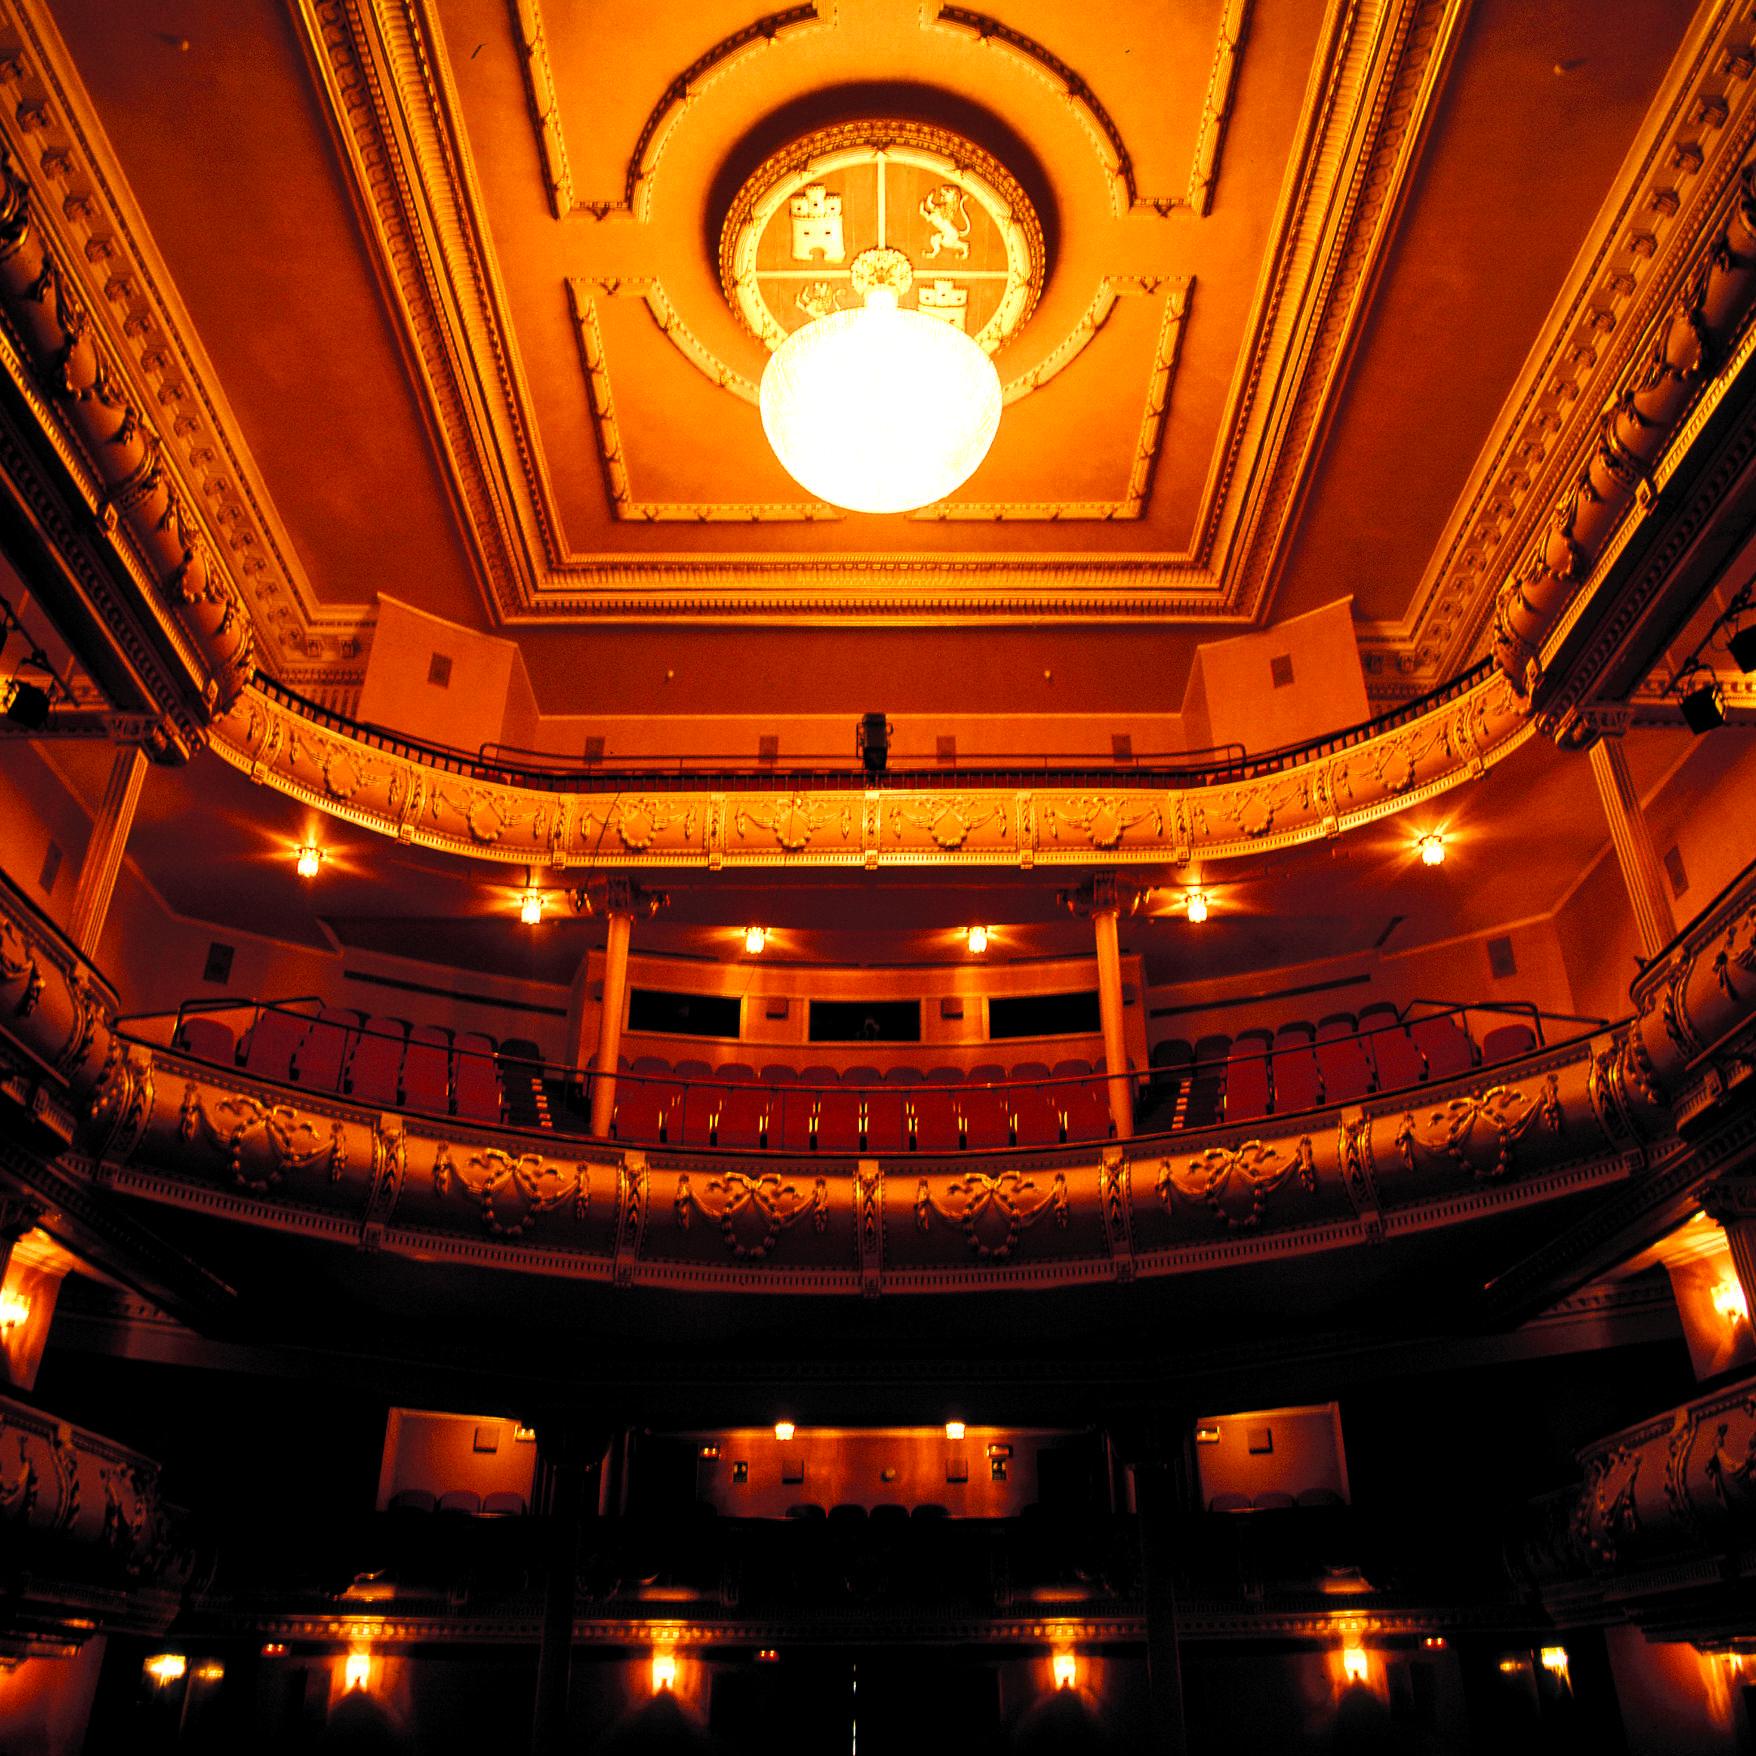 Gran Teatro.tif